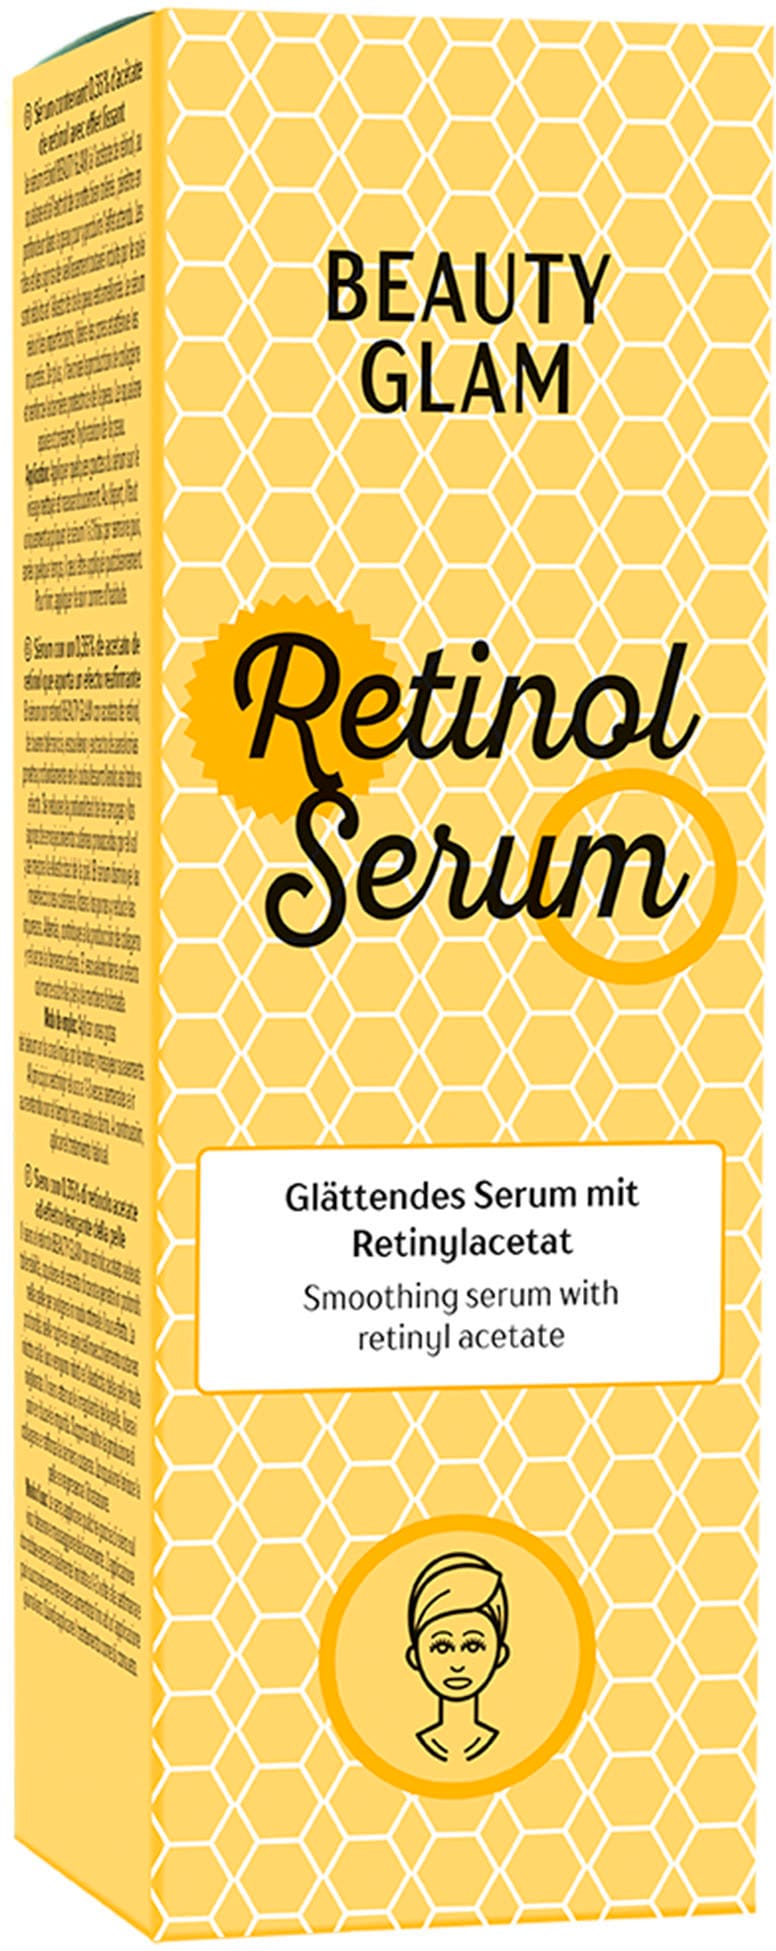 BEAUTY GLAM Gesichtsserum »Retinol Serum« im OTTO Online Shop